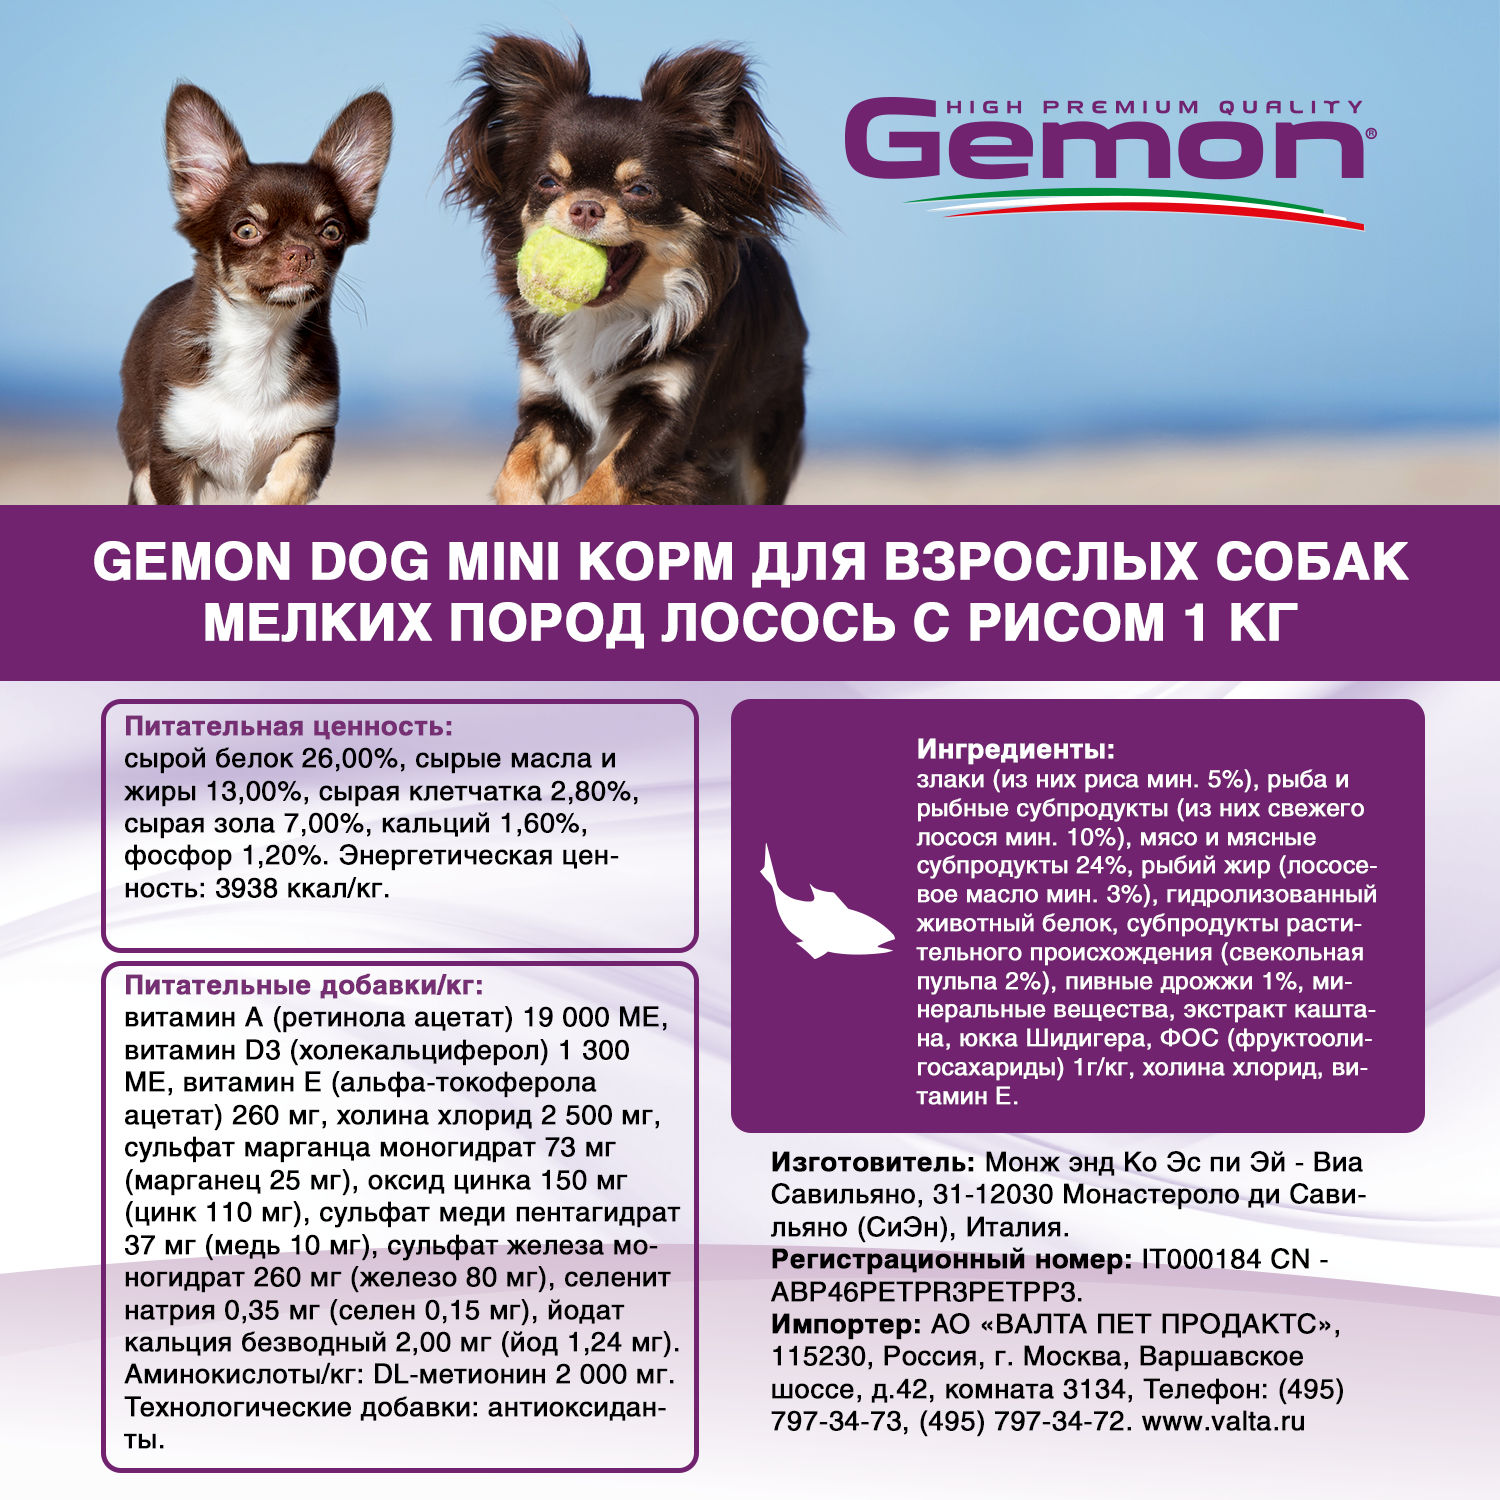 Gemon Dog Mini корм для взрослых собак мелких пород лосось с рисом 1 кг